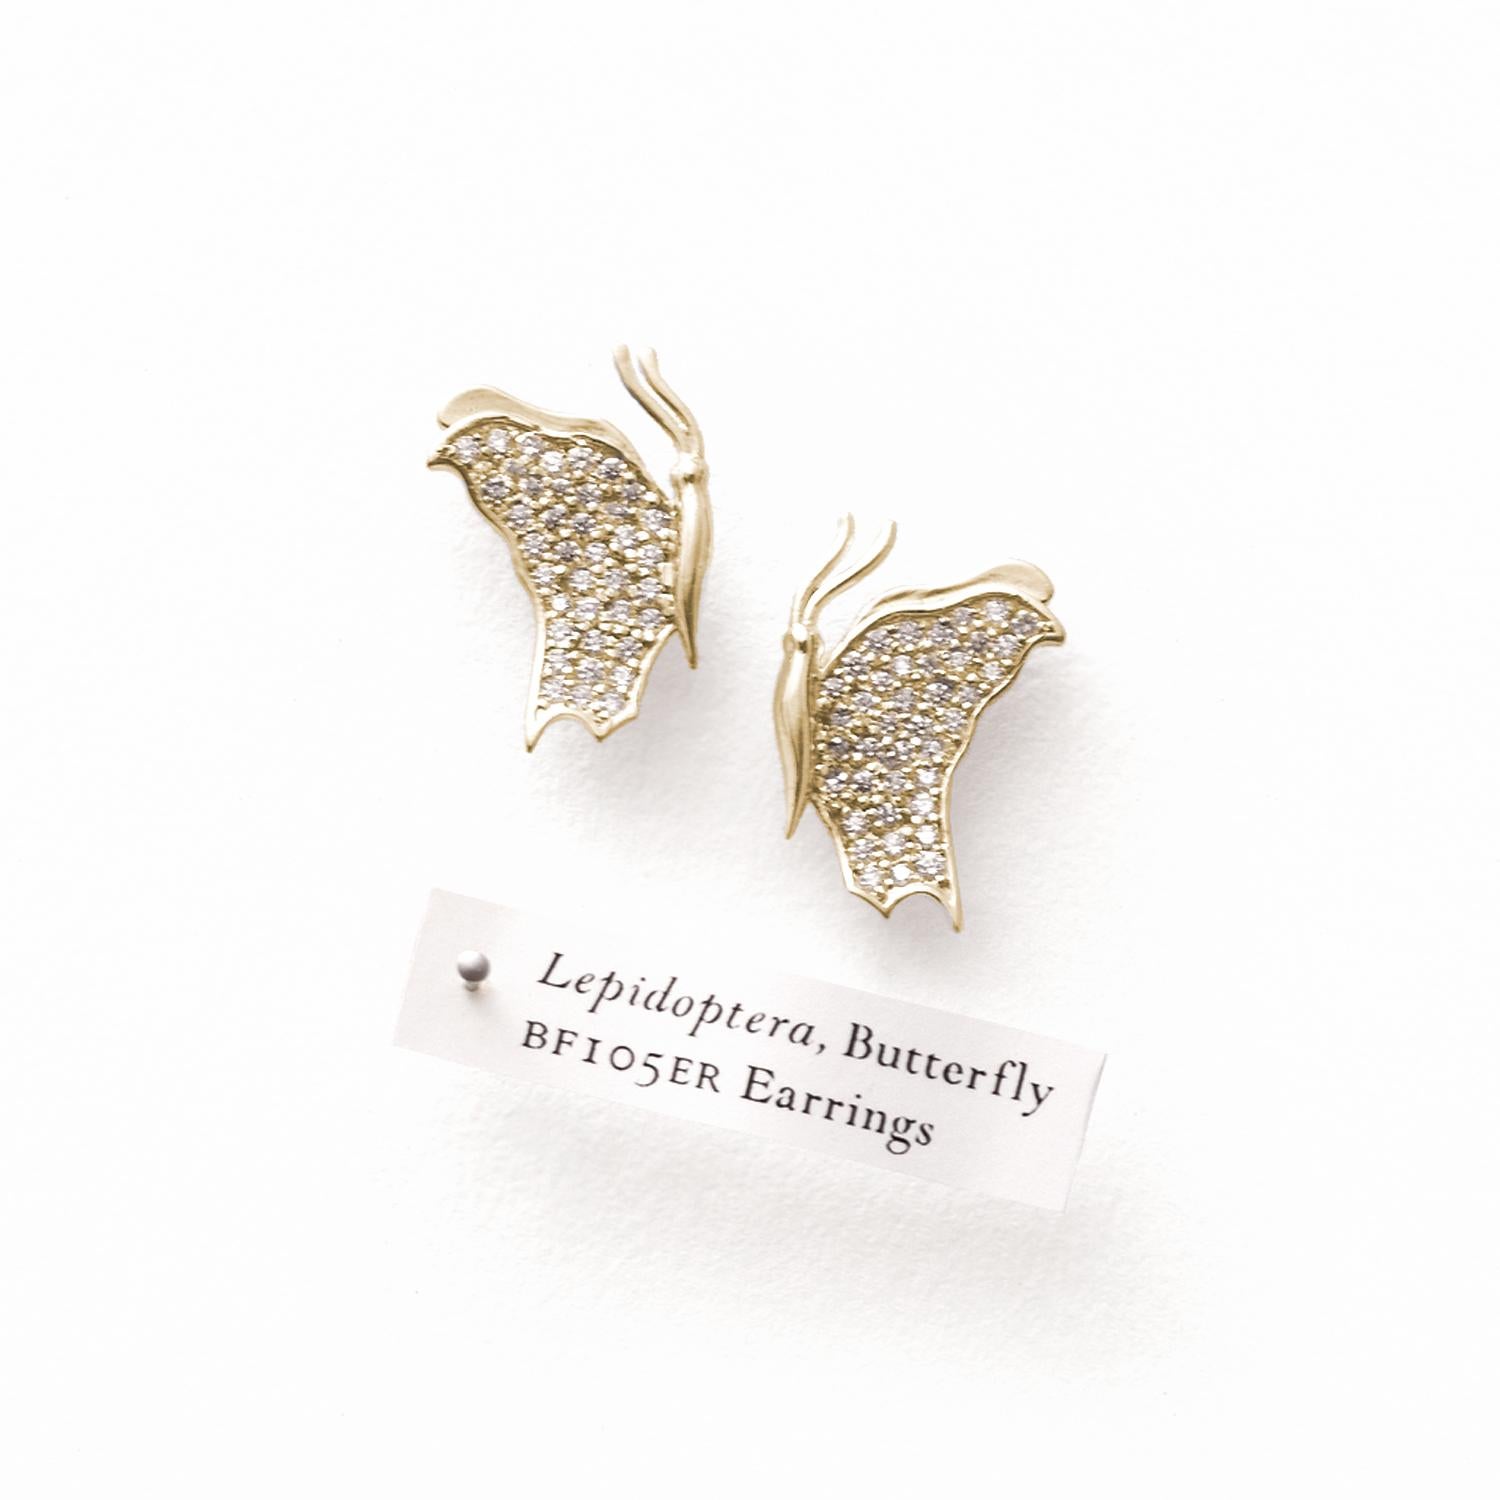 Erhöhen Sie Ihre Eleganz mit unseren atemberaubenden Large Butterfly Diamond Earrings. Diese exquisiten Ohrstecker ziehen die Blicke auf sich und geben Ihnen das Gefühl, dass echte Schmetterlinge auf Ihren Ohrläppchen gelandet sind.

Jeder Ohrring